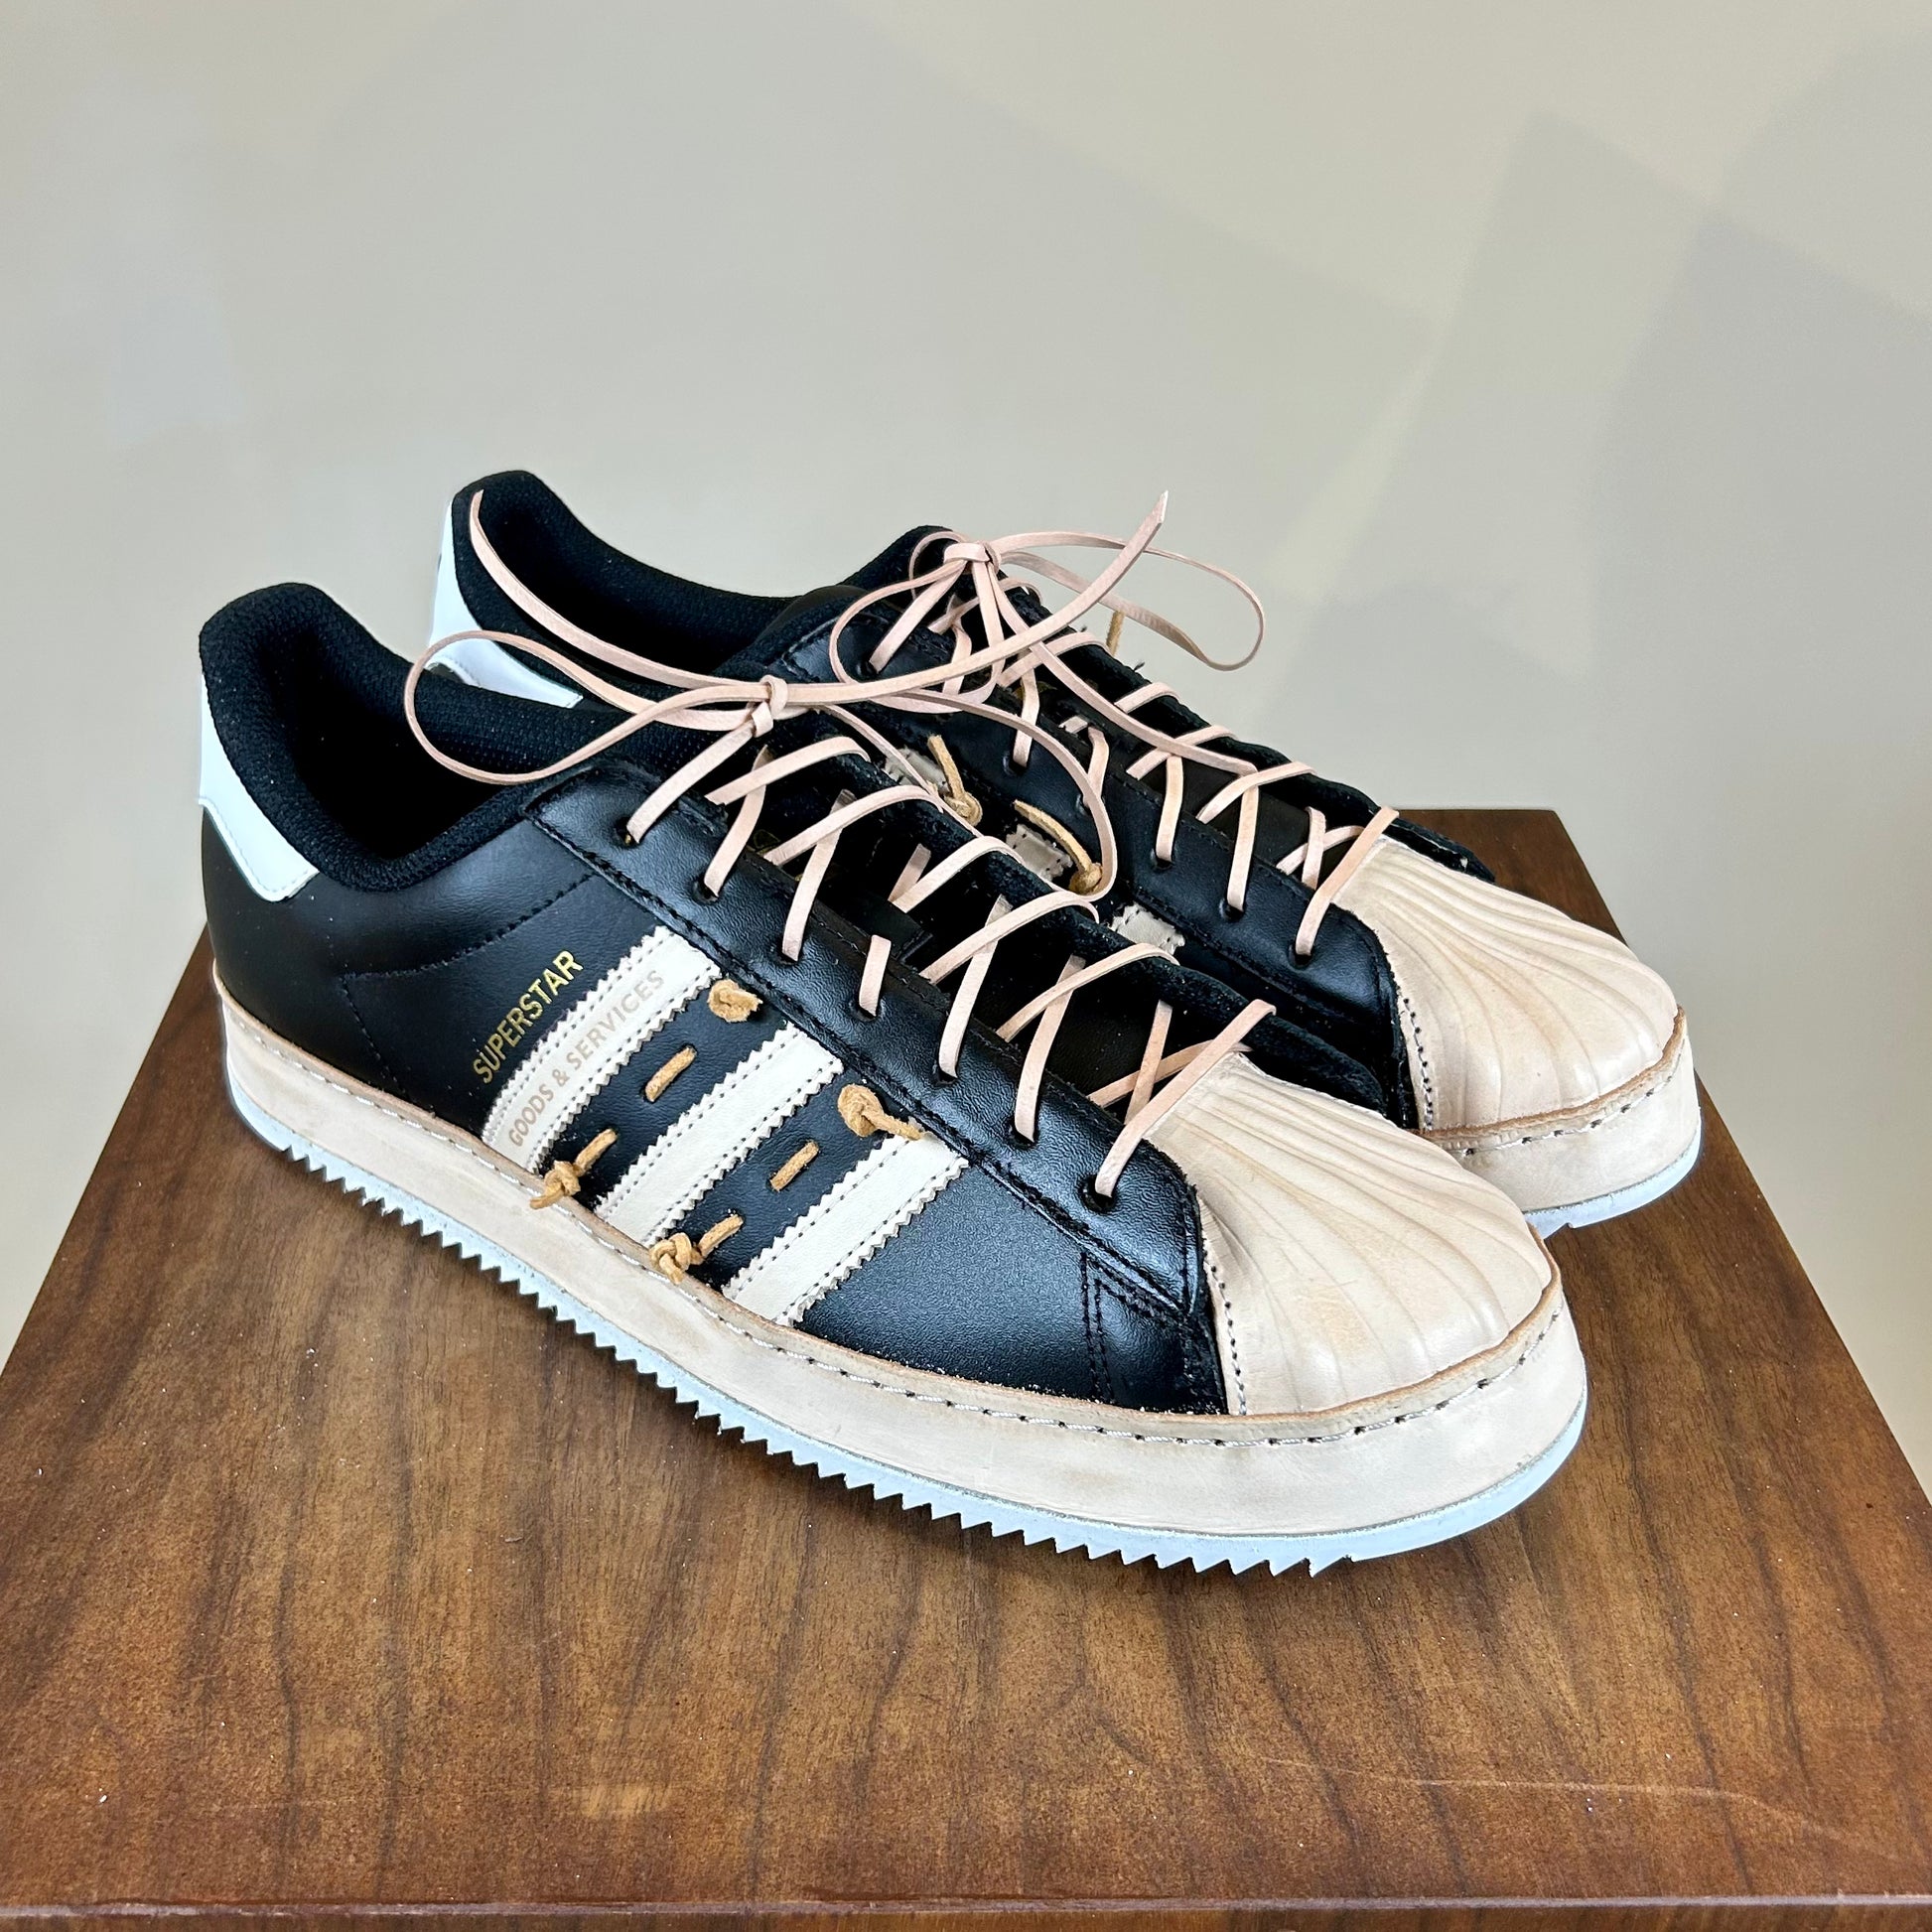 Adidas Superstar Handmade Leather Resole – Goods &